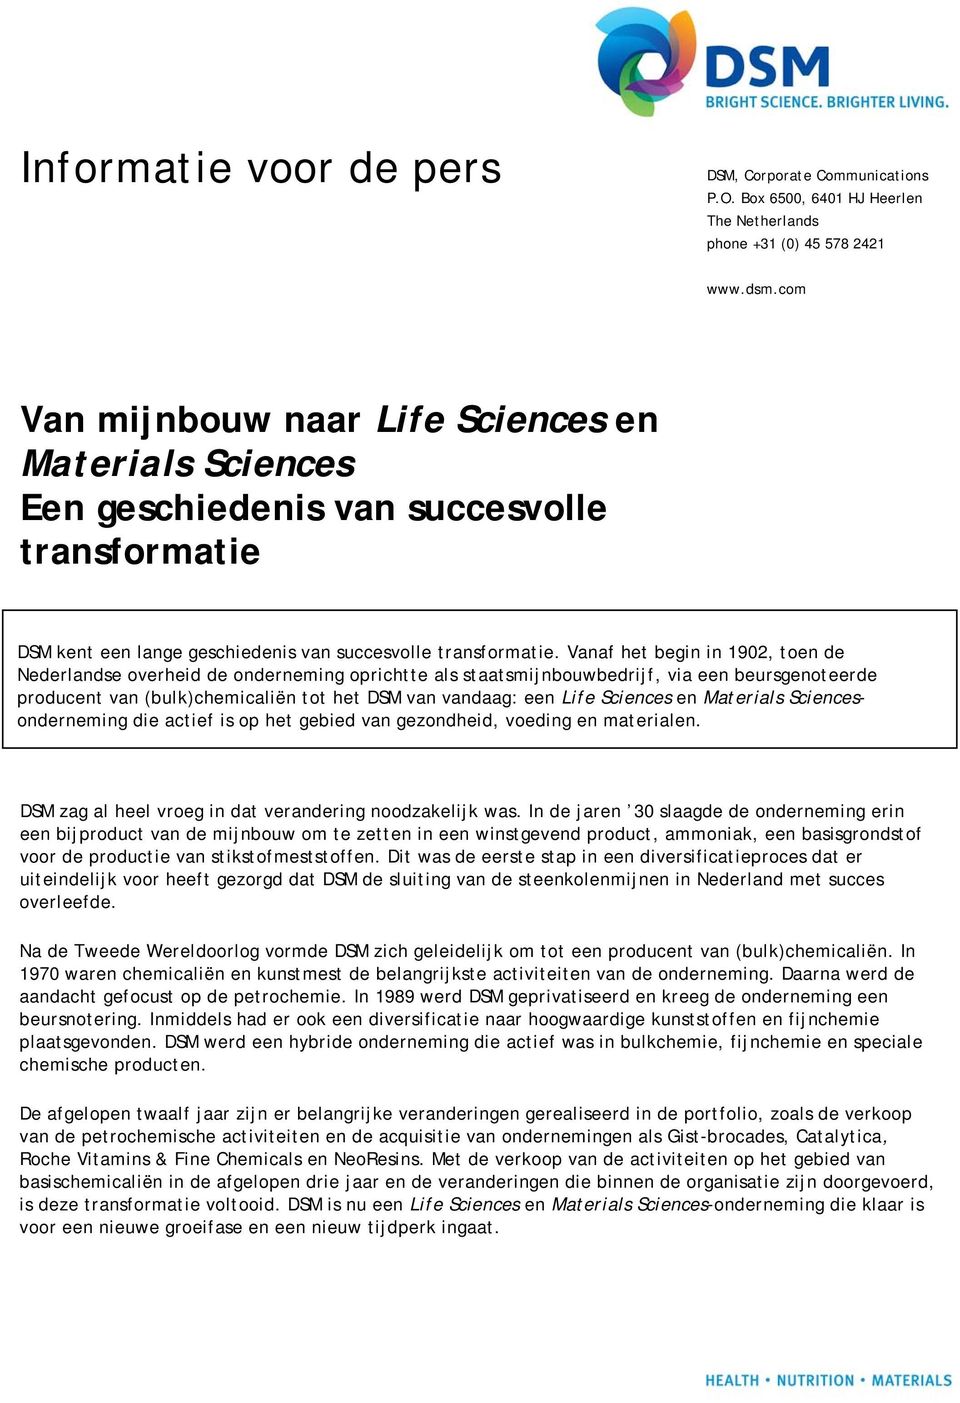 Vanaf het begin in 1902, toen de Nederlandse overheid de onderneming oprichtte als staatsmijnbouwbedrijf, via een beursgenoteerde producent van (bulk)chemicaliën tot het DSM van vandaag: een Life